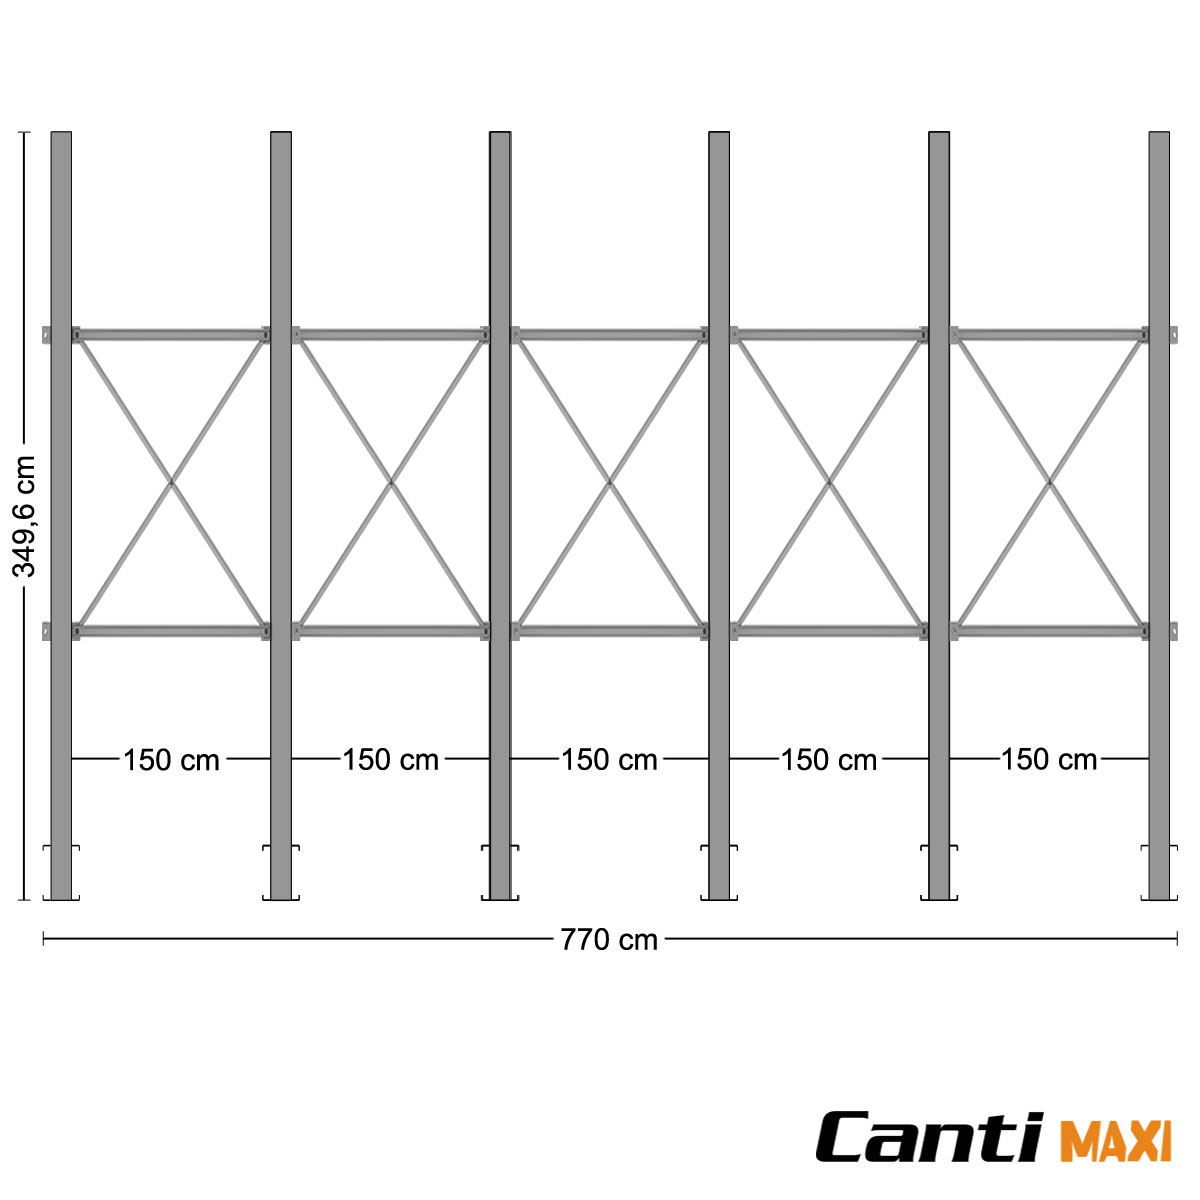 Cantilever 6 Colonne, 48 Bracci (970Kg)  / cm. H.350xP.100 / Lungh. 770 cm.